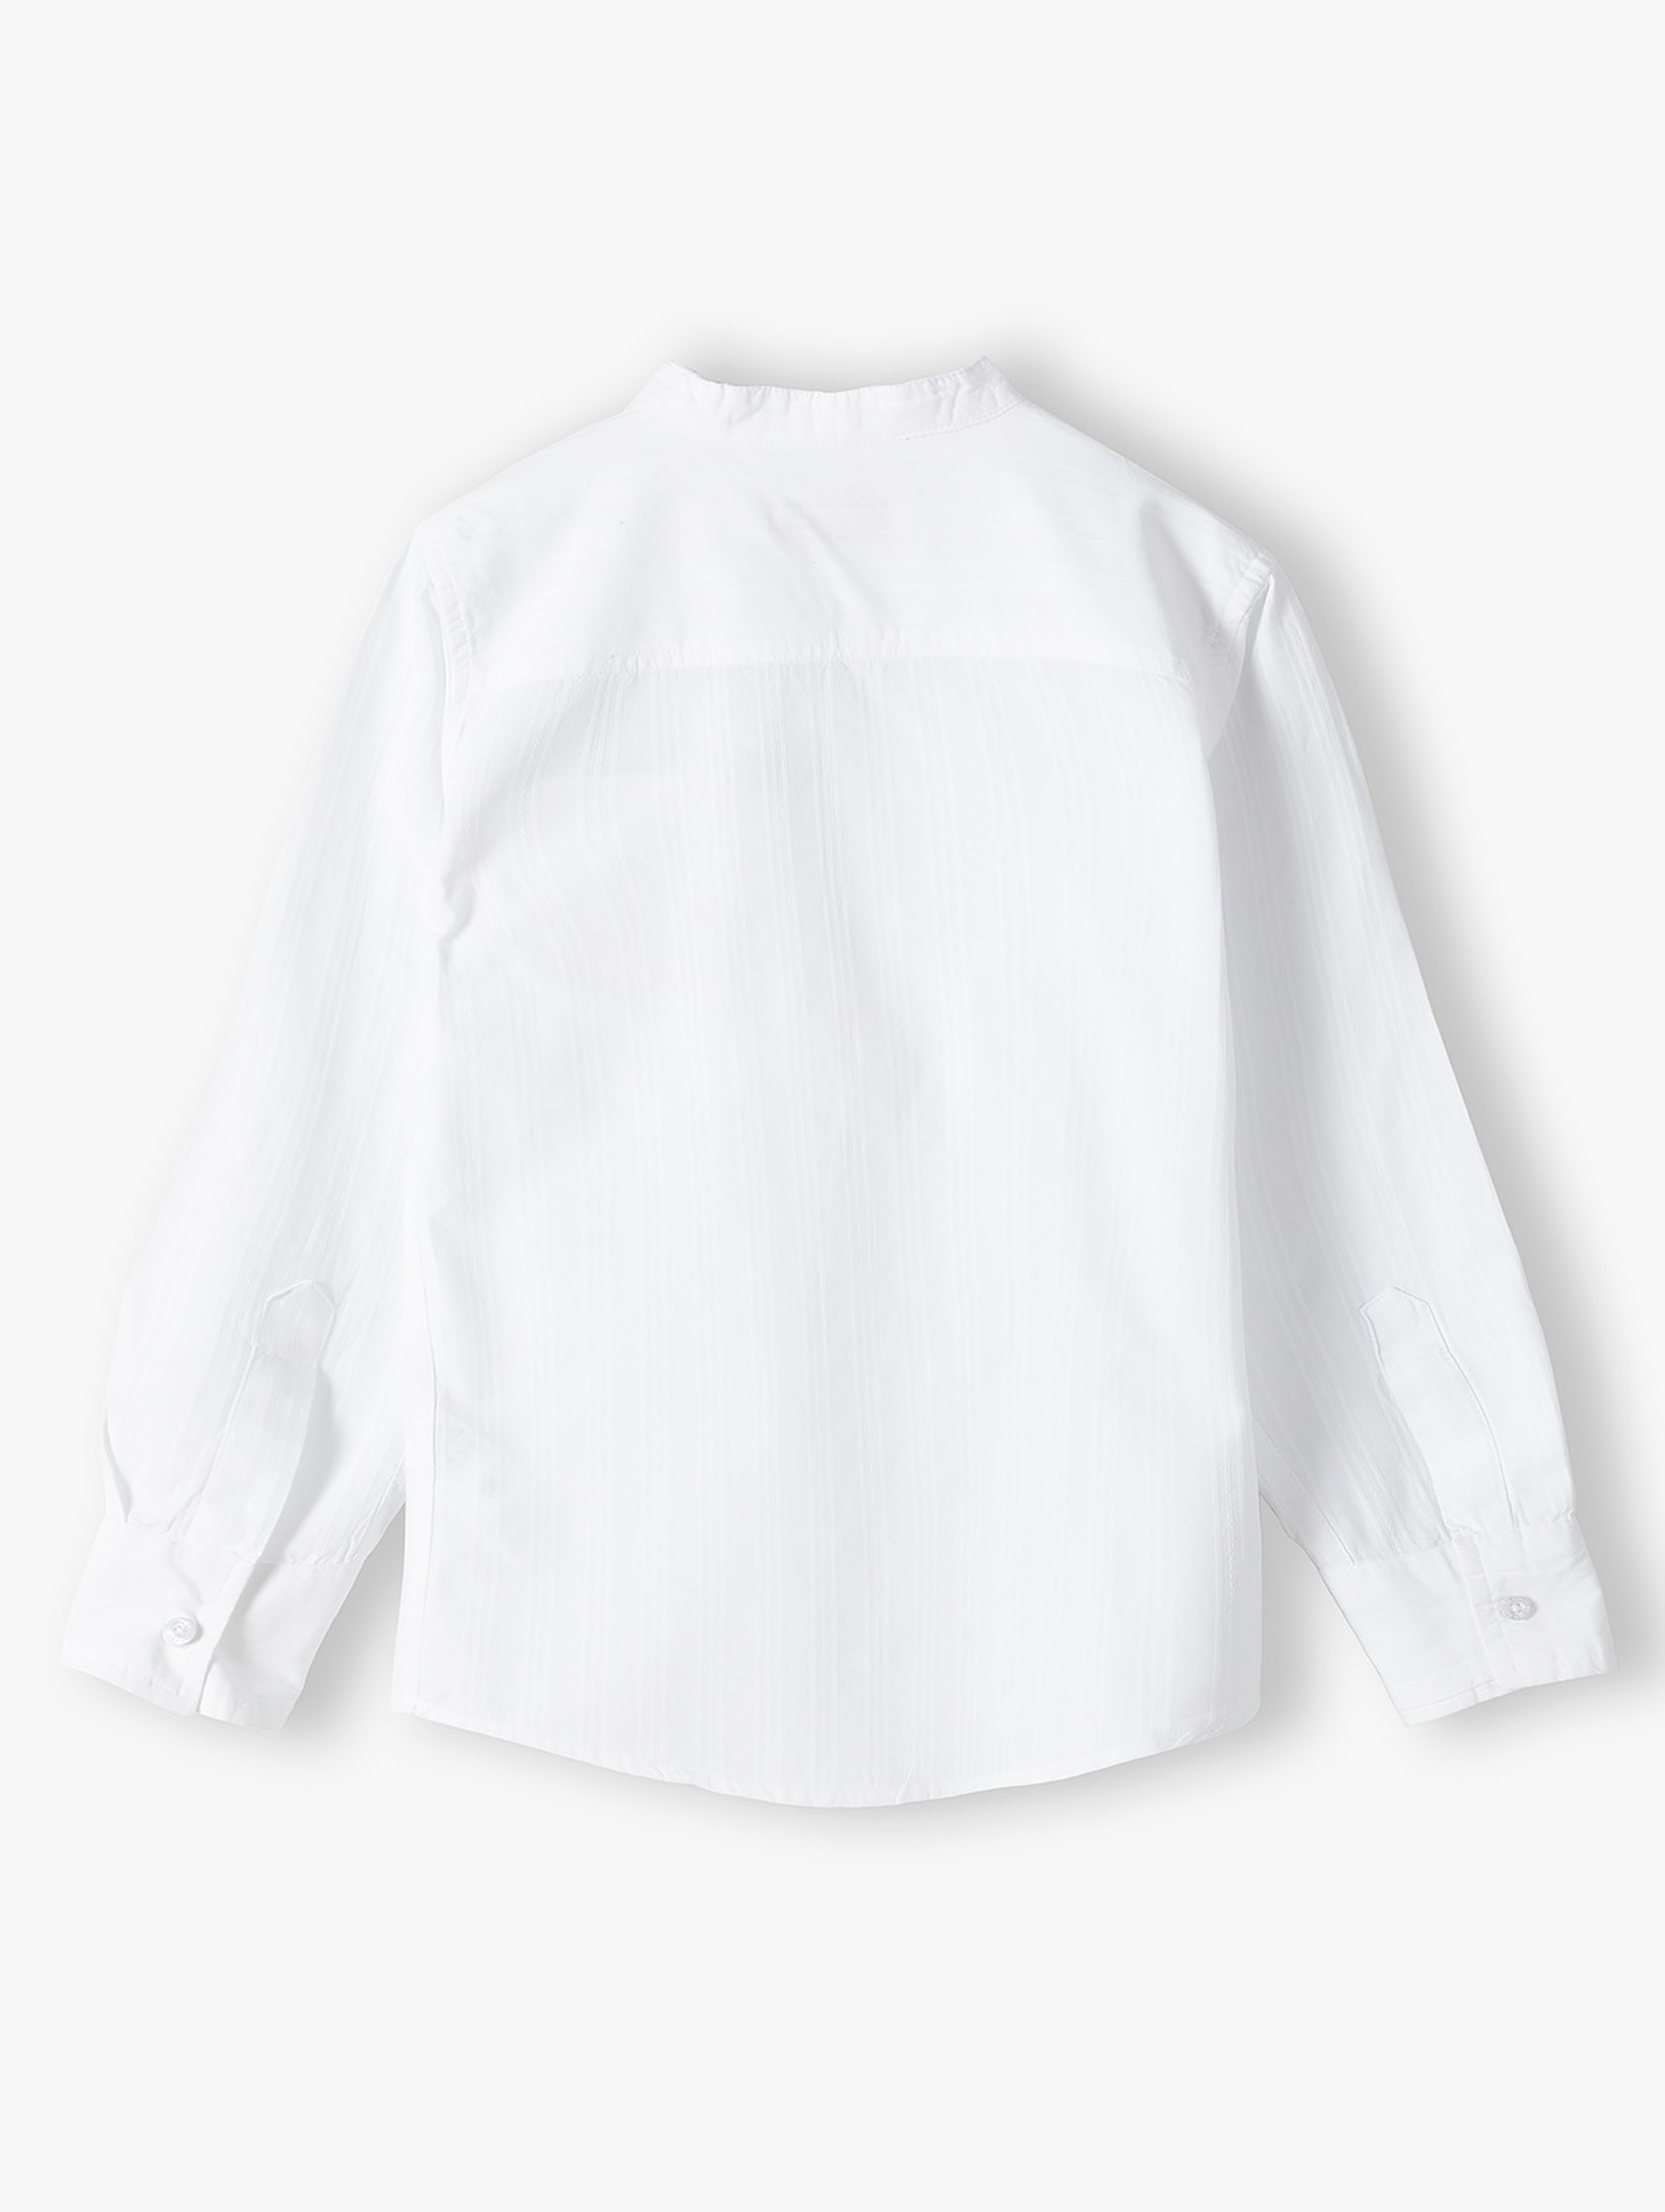 Elegancka biała koszula chłopięca z długim rękawem fason regular